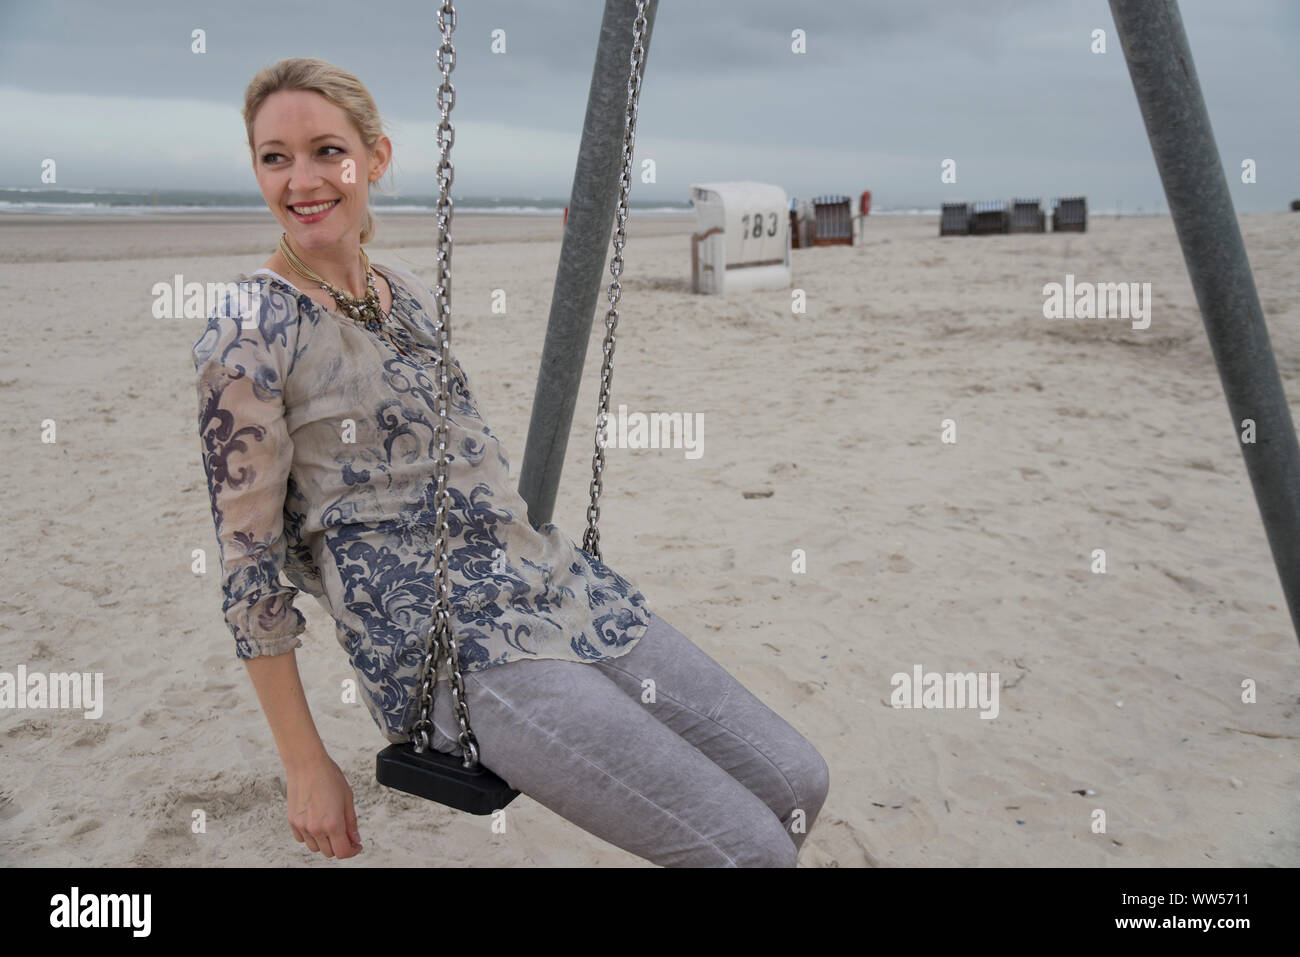 Ritratto di metà donna sulla spiaggia seduta su swing con sdraio in spiaggia e mare in background Foto Stock